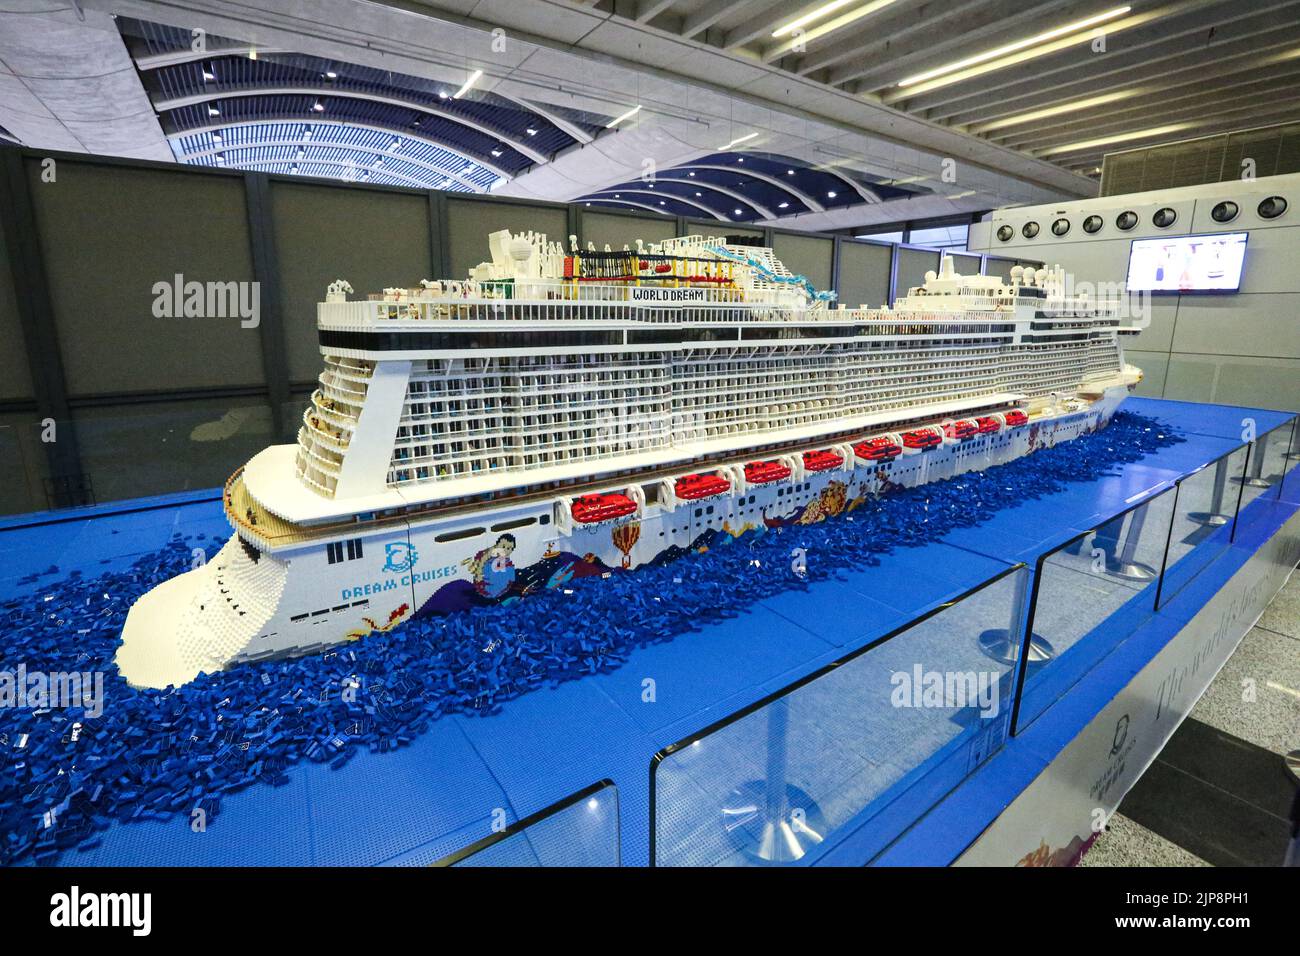 Le plus grand navire Lego du monde, Guinness World Records, terminal de croisière de Hong Kong, Chine, modèle de bateau de croisière Lego. 2023 : Manara (Aroya Cruises) Saudi Line Banque D'Images